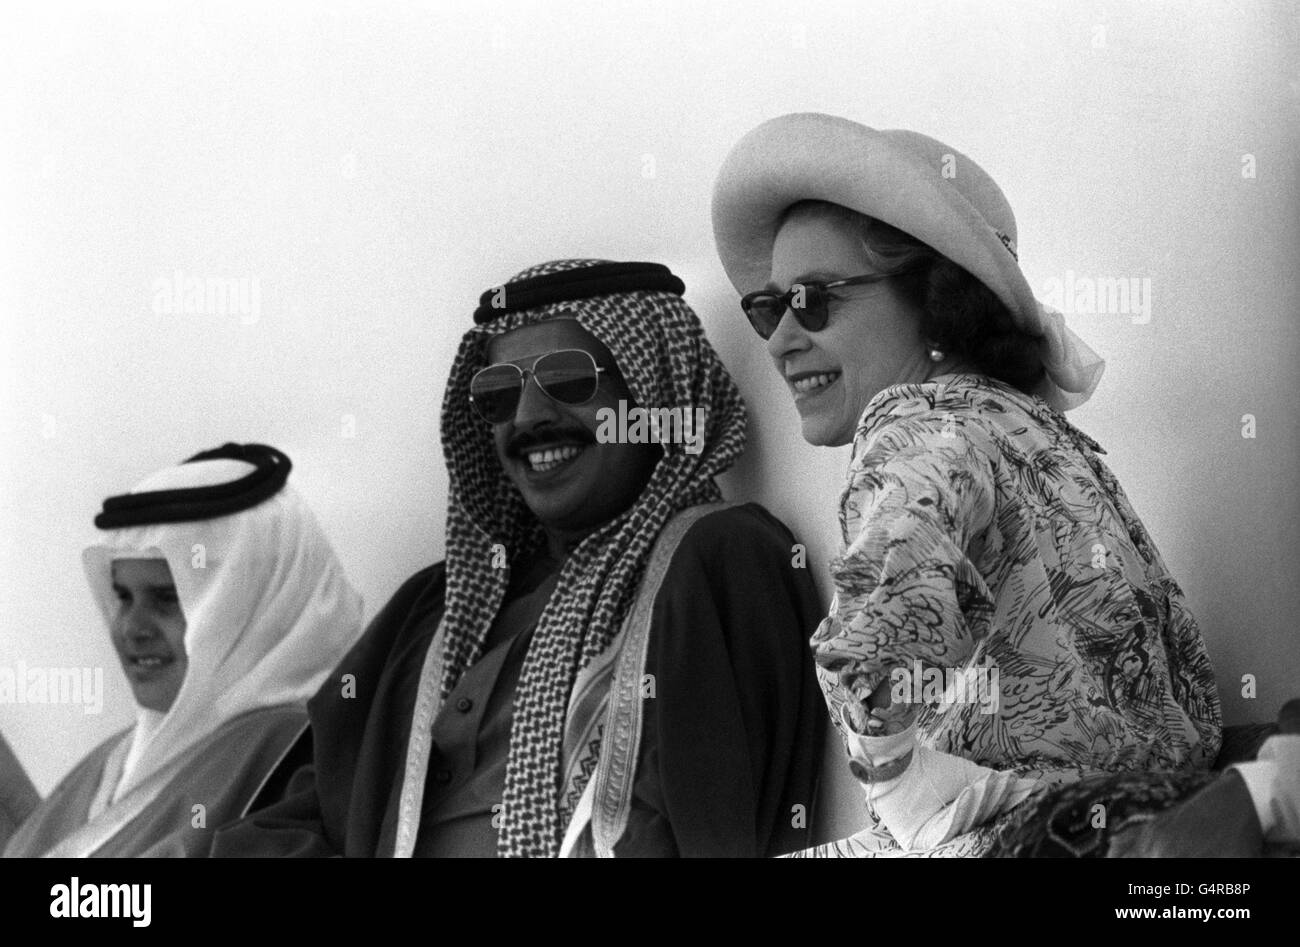 La reine Elizabeth II avec Sheikh Ahmed bin ISA Al-Khalifa aux courses de Bahreïn. L'émir est strictement anti-Paris et a sa propre manière de décourager les parieurs - il change les nombres sur tous les chevaux juste avant le début de la course. Mais lorsque la Reine s'est rendue, aucun changement n'a été apporté. Banque D'Images